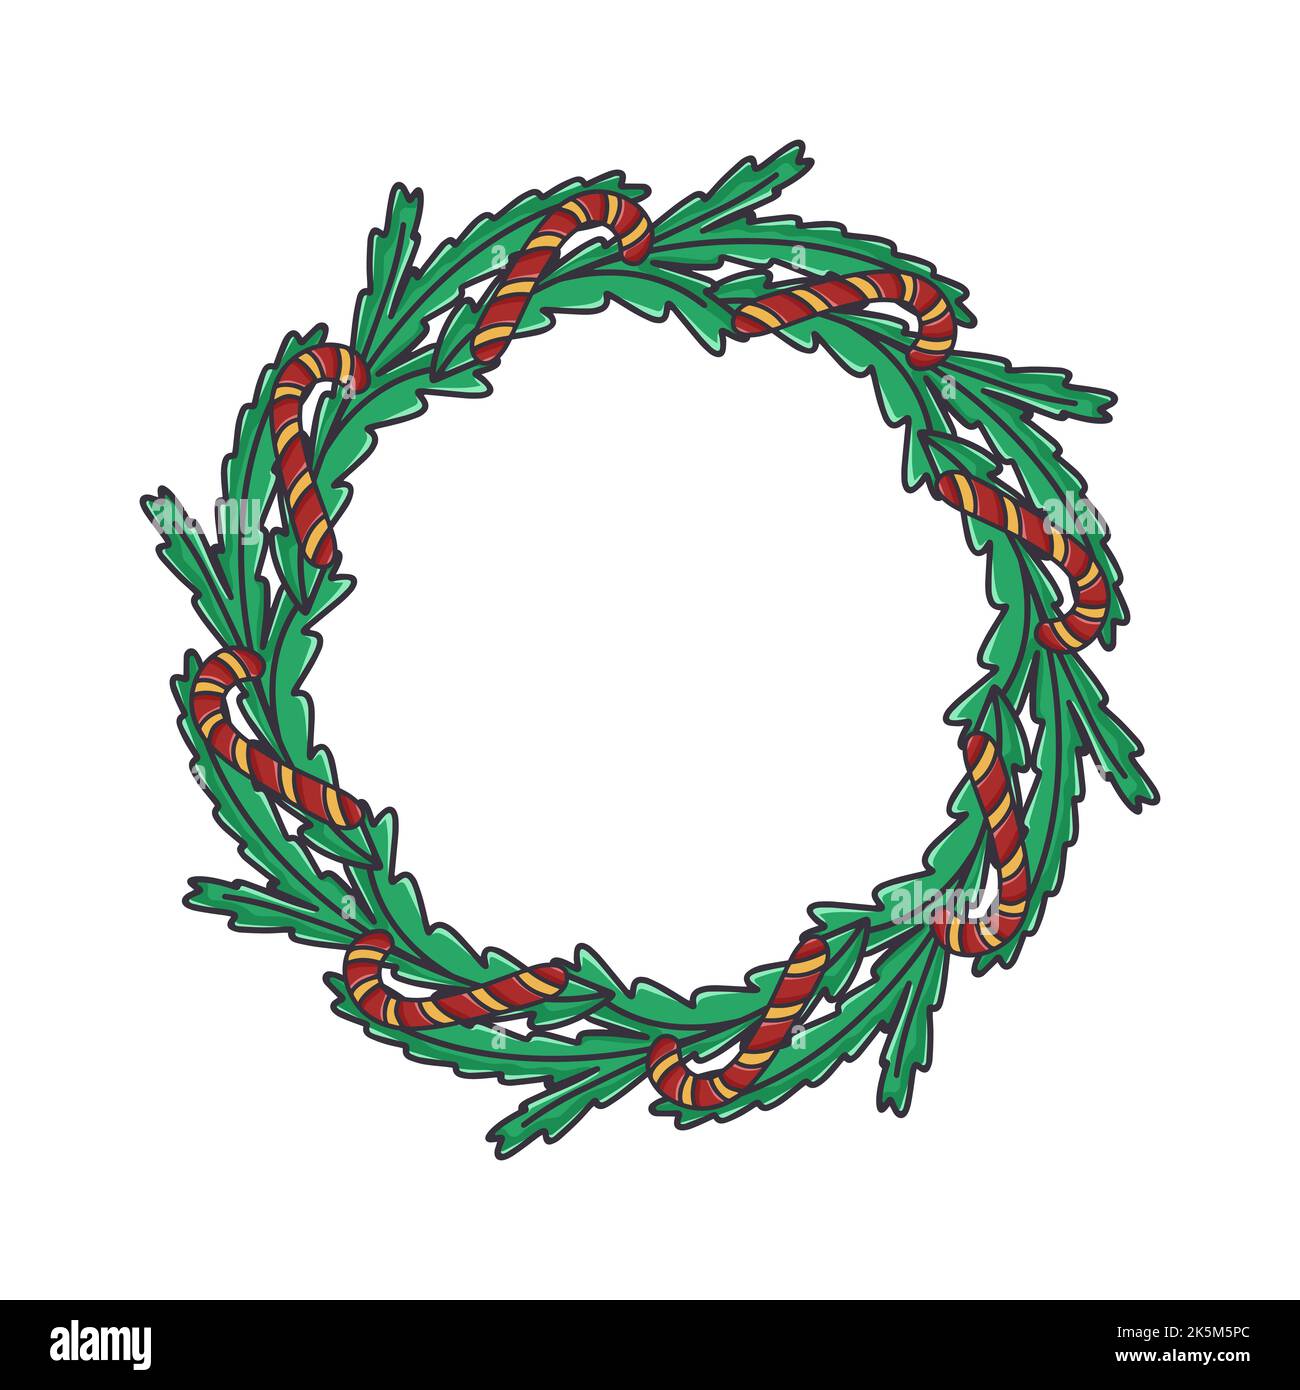 Weihnachtskranz aus Tannenzweigen mit Zuckerstöcken. Runde traditionelle Felge für das neue Jahr. Kreisförmiger botanischer Rahmen mit Süßigkeiten isoliert Vektor illustrati Stock Vektor